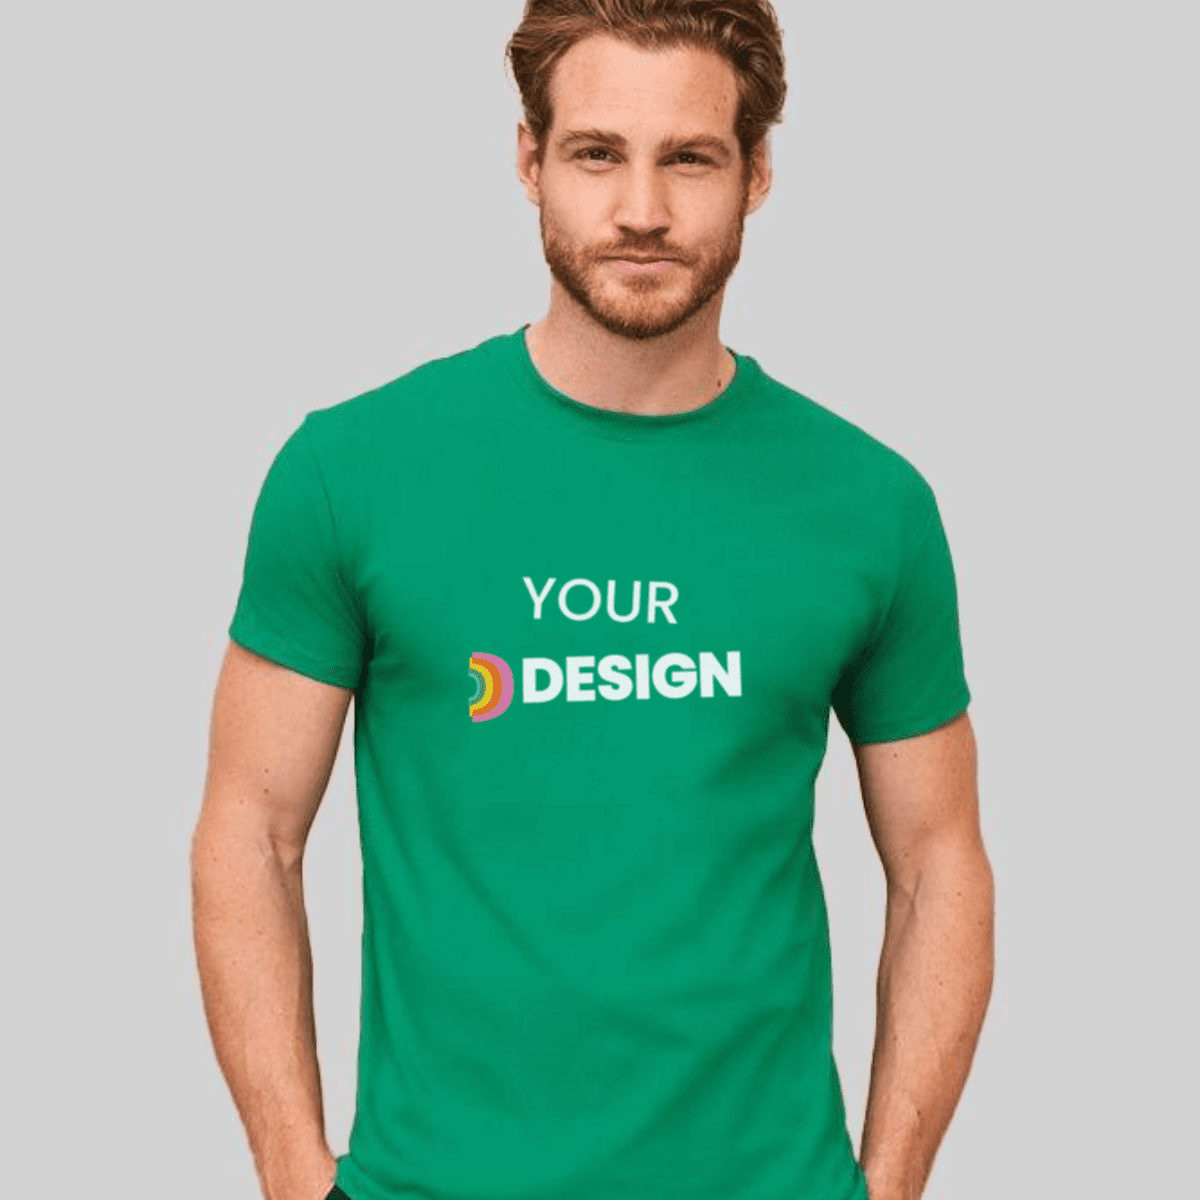 Snazzy Winst Voor type T-shirts met je eigen bedrukking? | Digitransfer doet 't